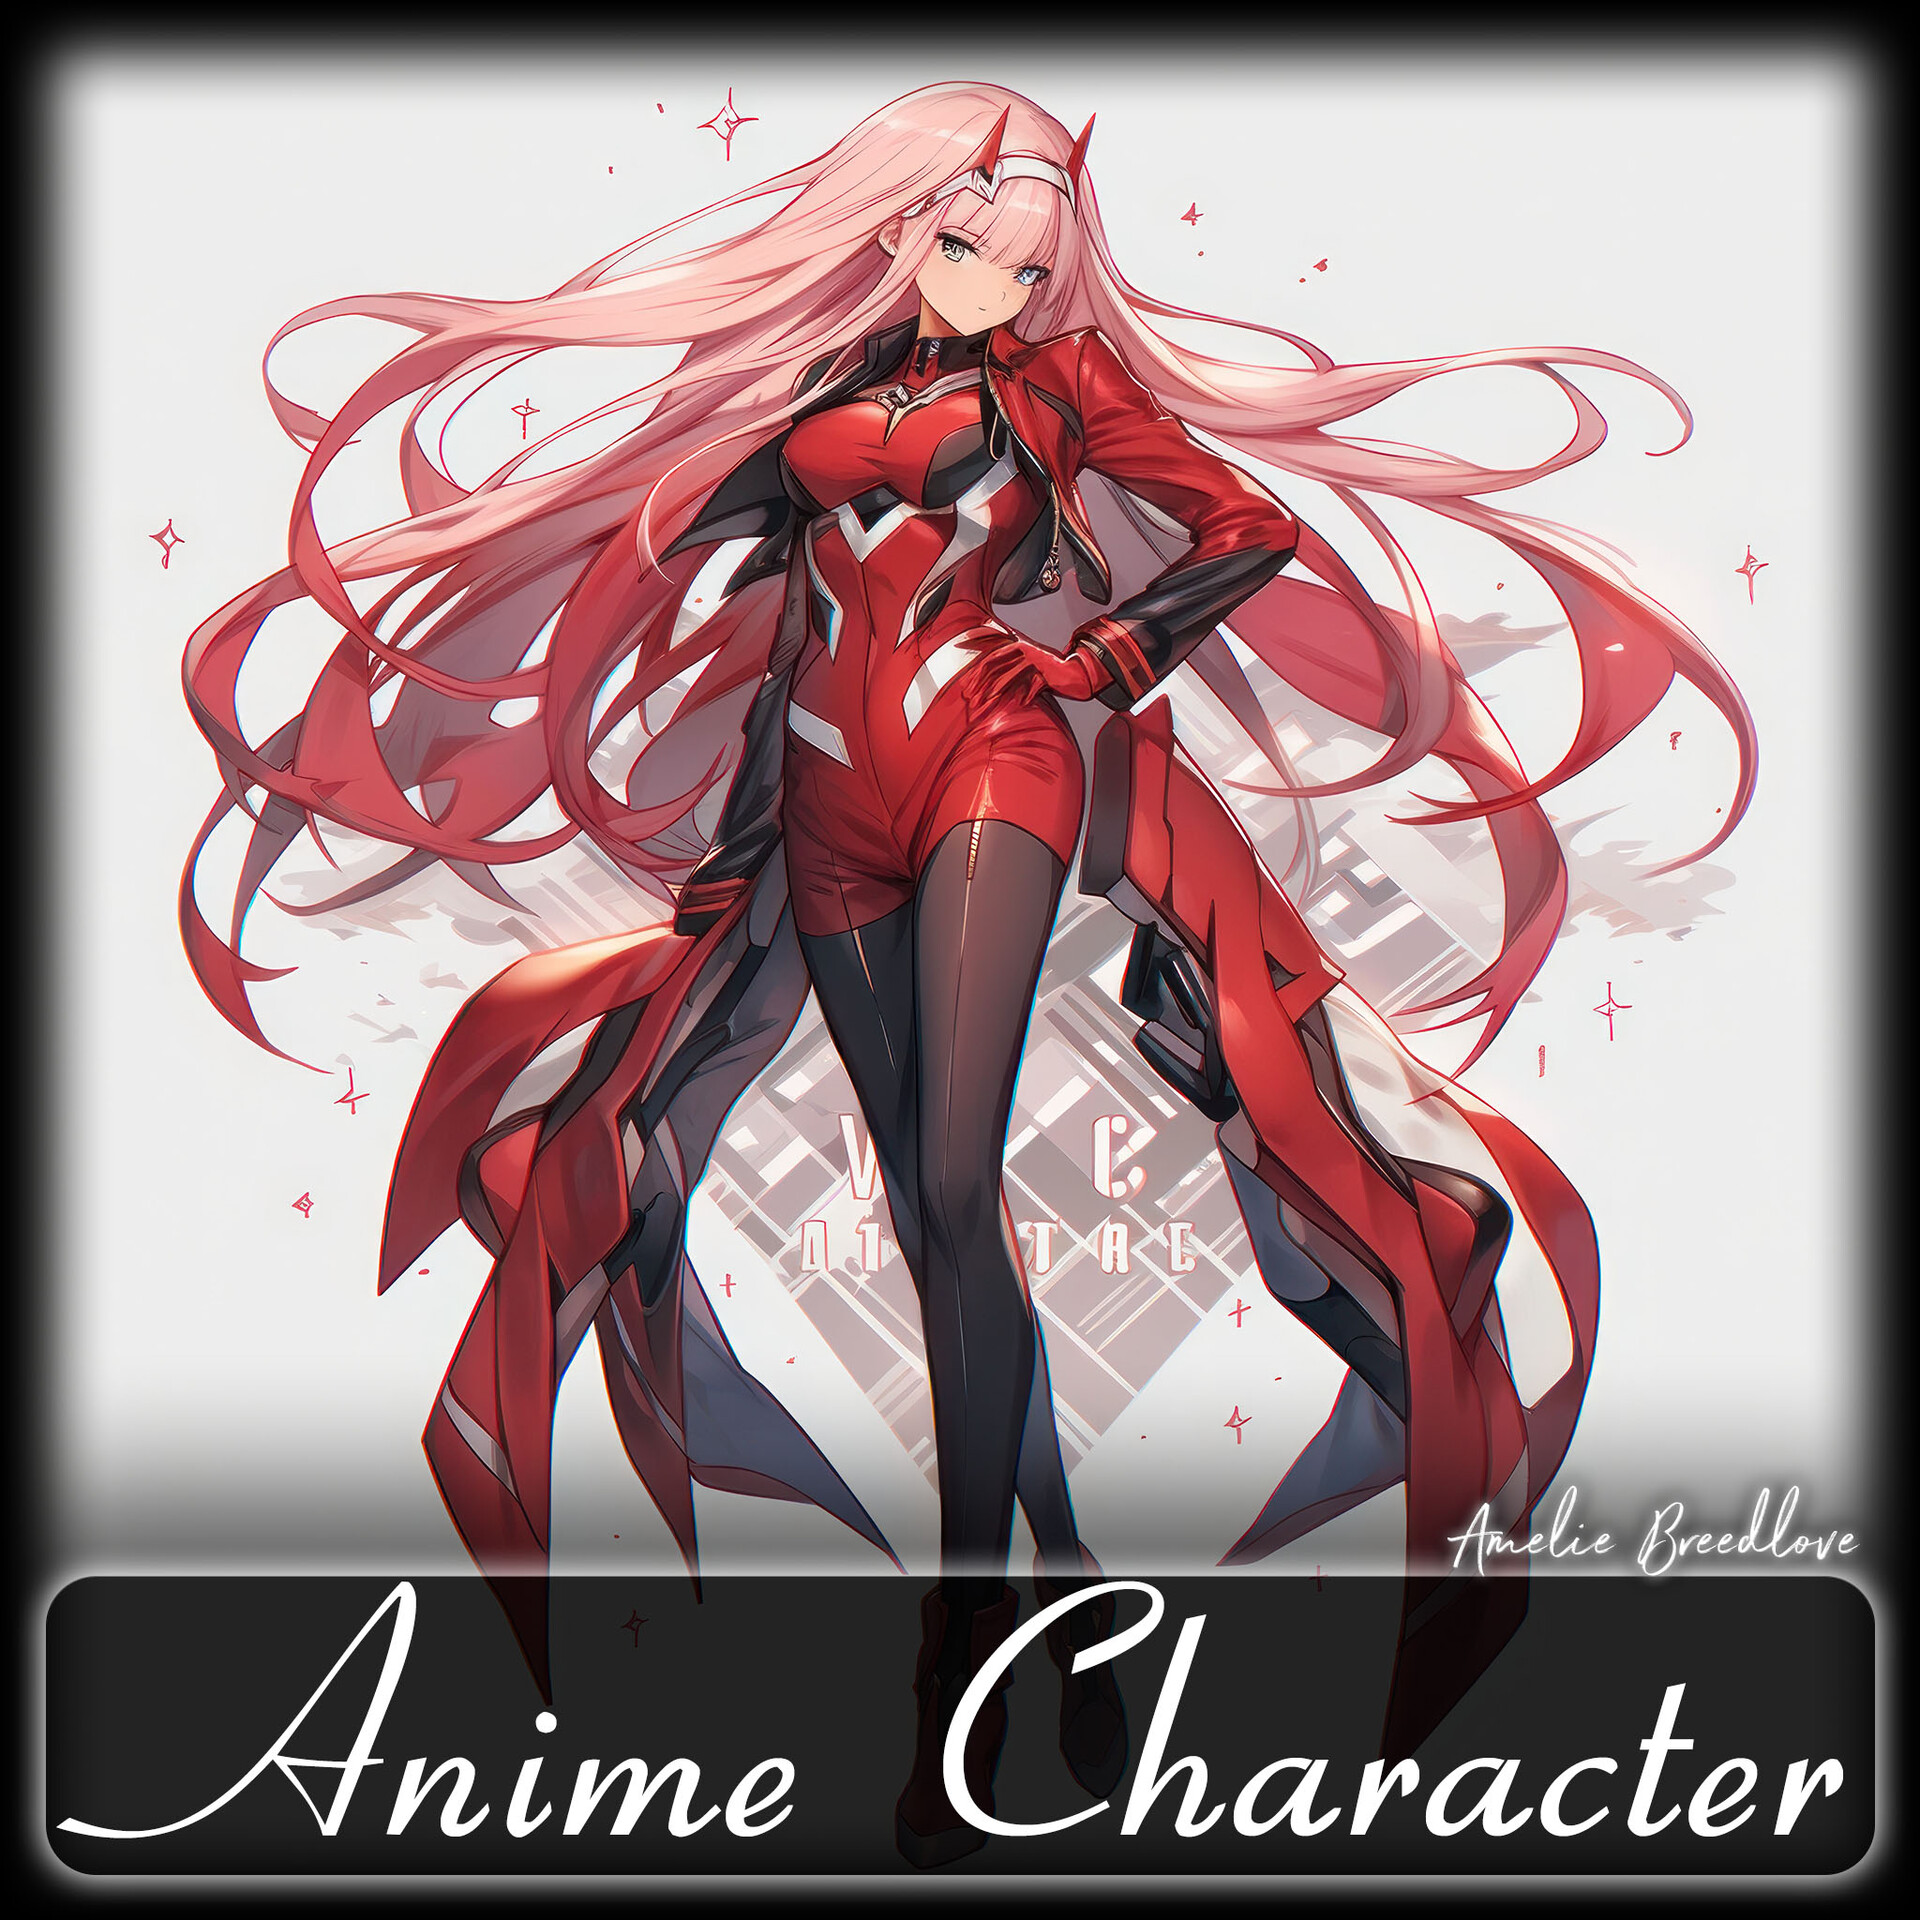 ArtStation - 200 Anime Character (Full Body) Reference Pack, 4K